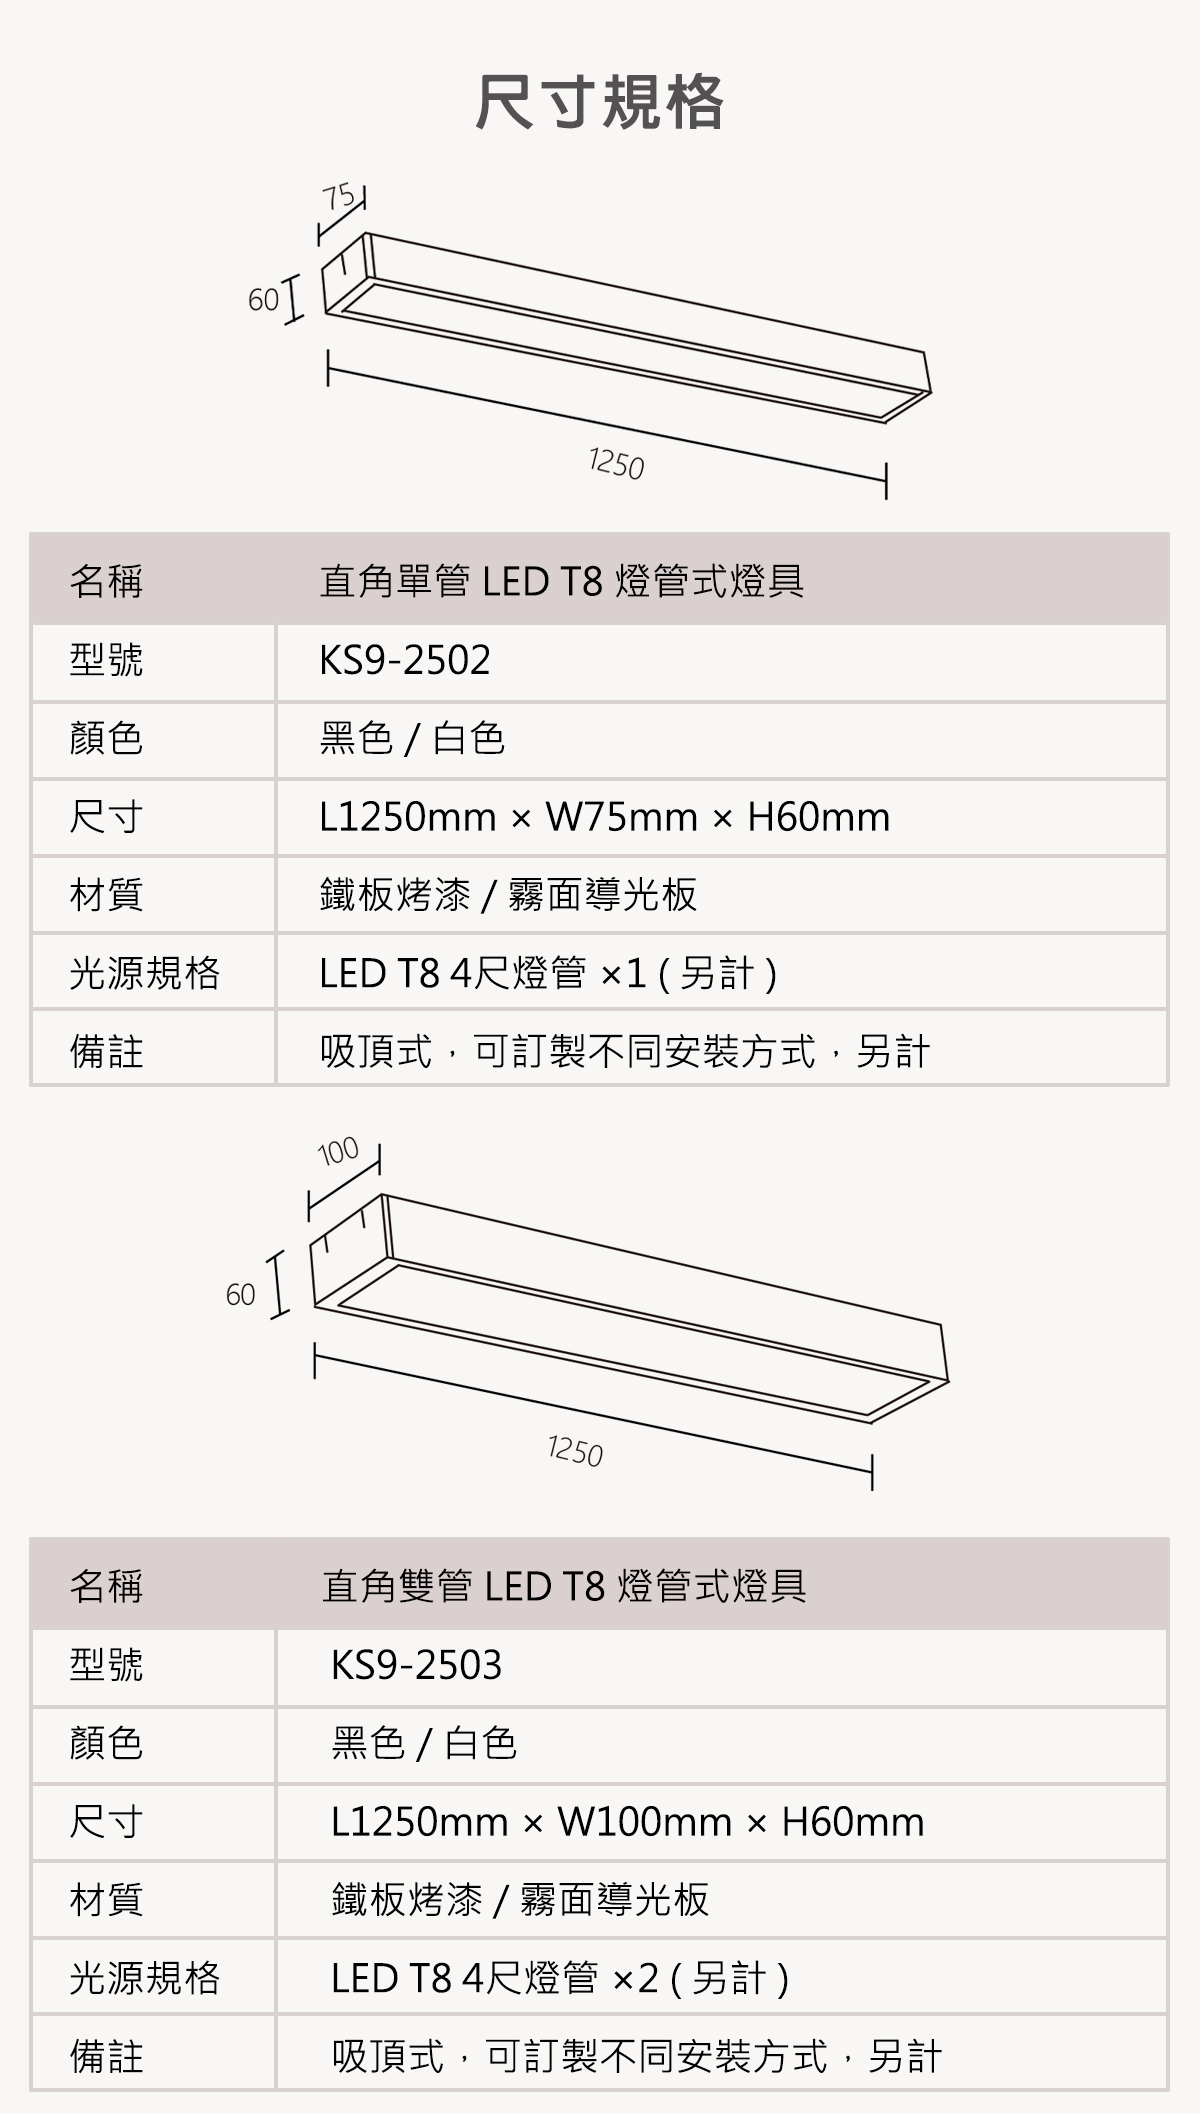 【KAO'S】LED T8 直角燈管式吸頂燈具 單管/雙管 燈管另計 可訂製吊管式-軌道式-吊線式